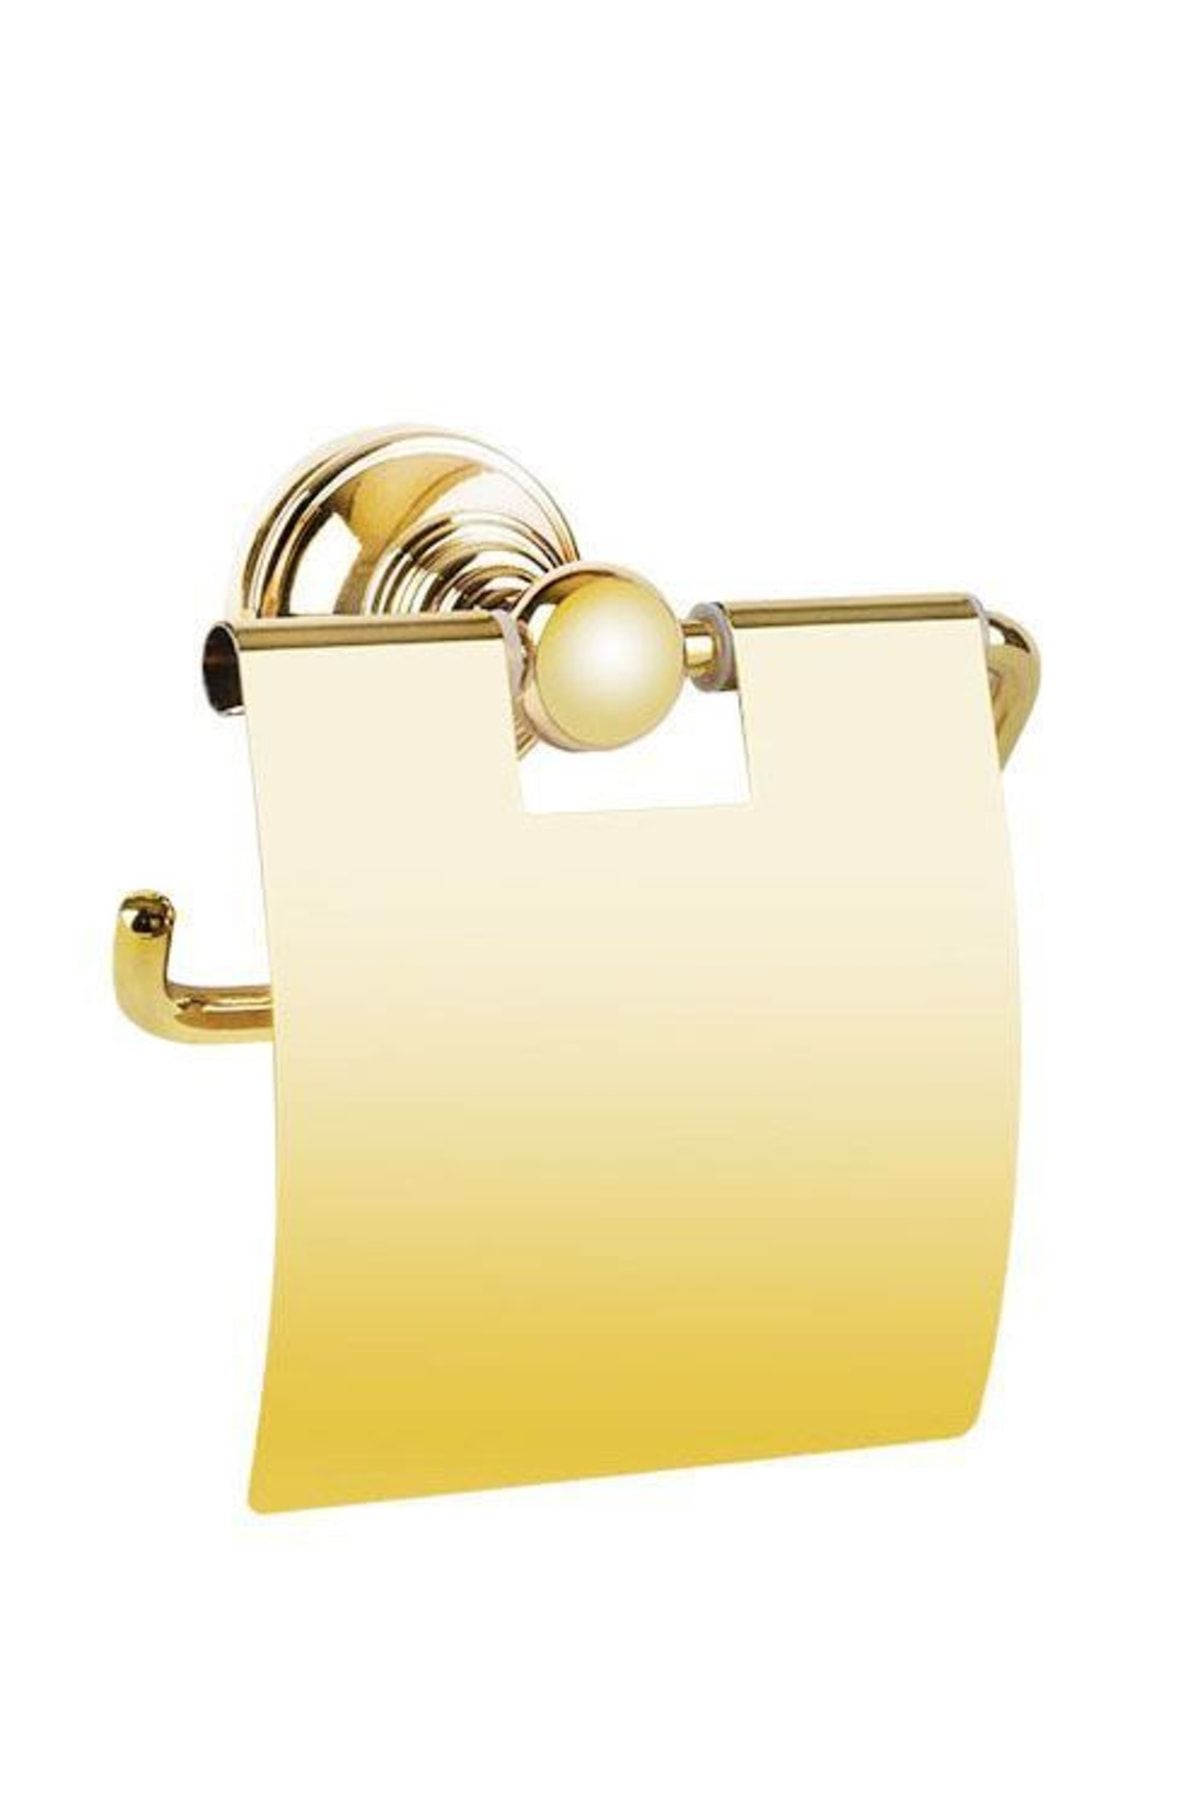 Eca Serel Luna Tuvalet Kağıtlığı Altın Gold Paslanmaz- Pirinç 140110009a